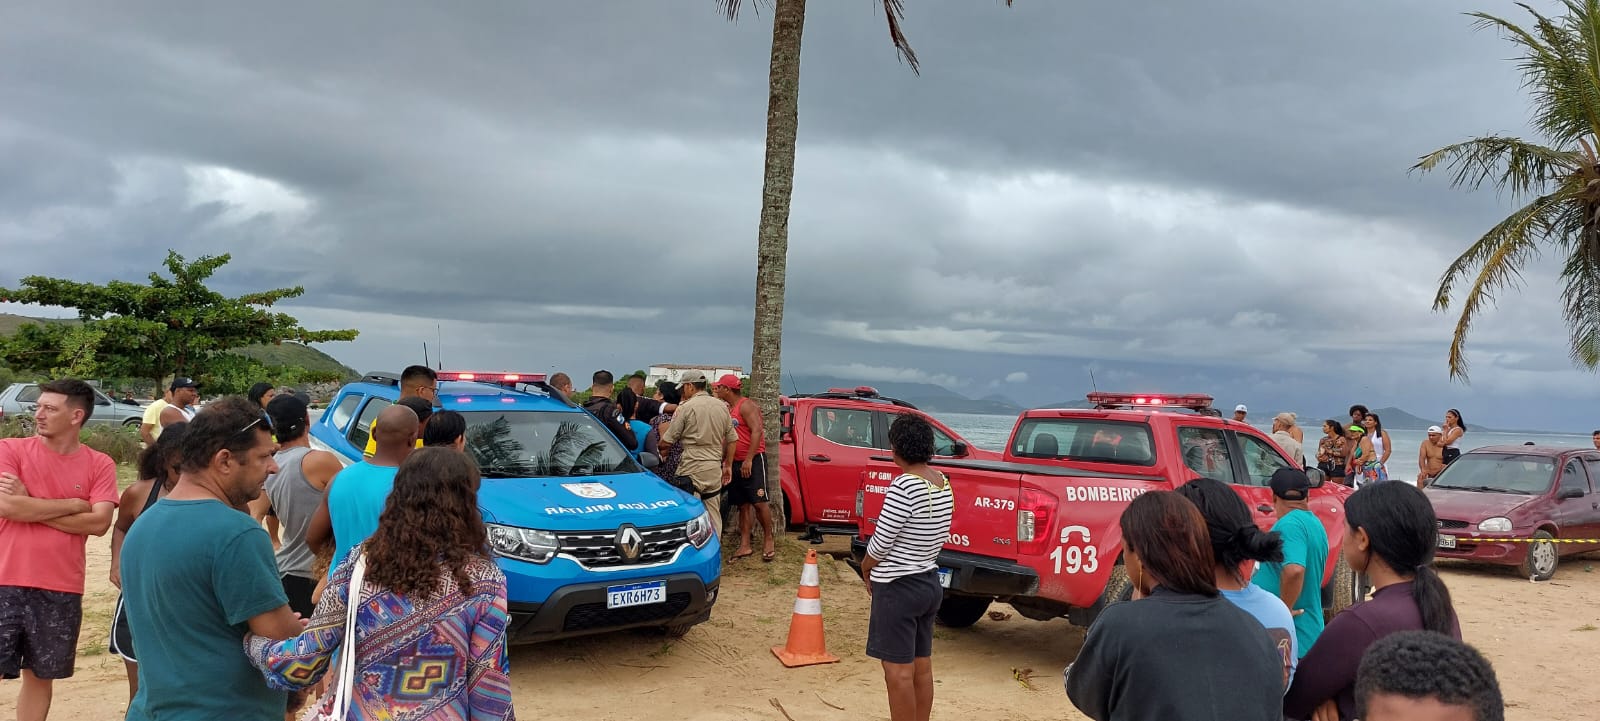 Adolescente De 15 Anos De Bh Morre Afogado Na Praia Do Forte Em Cabo Frio Por Dentro De Minas